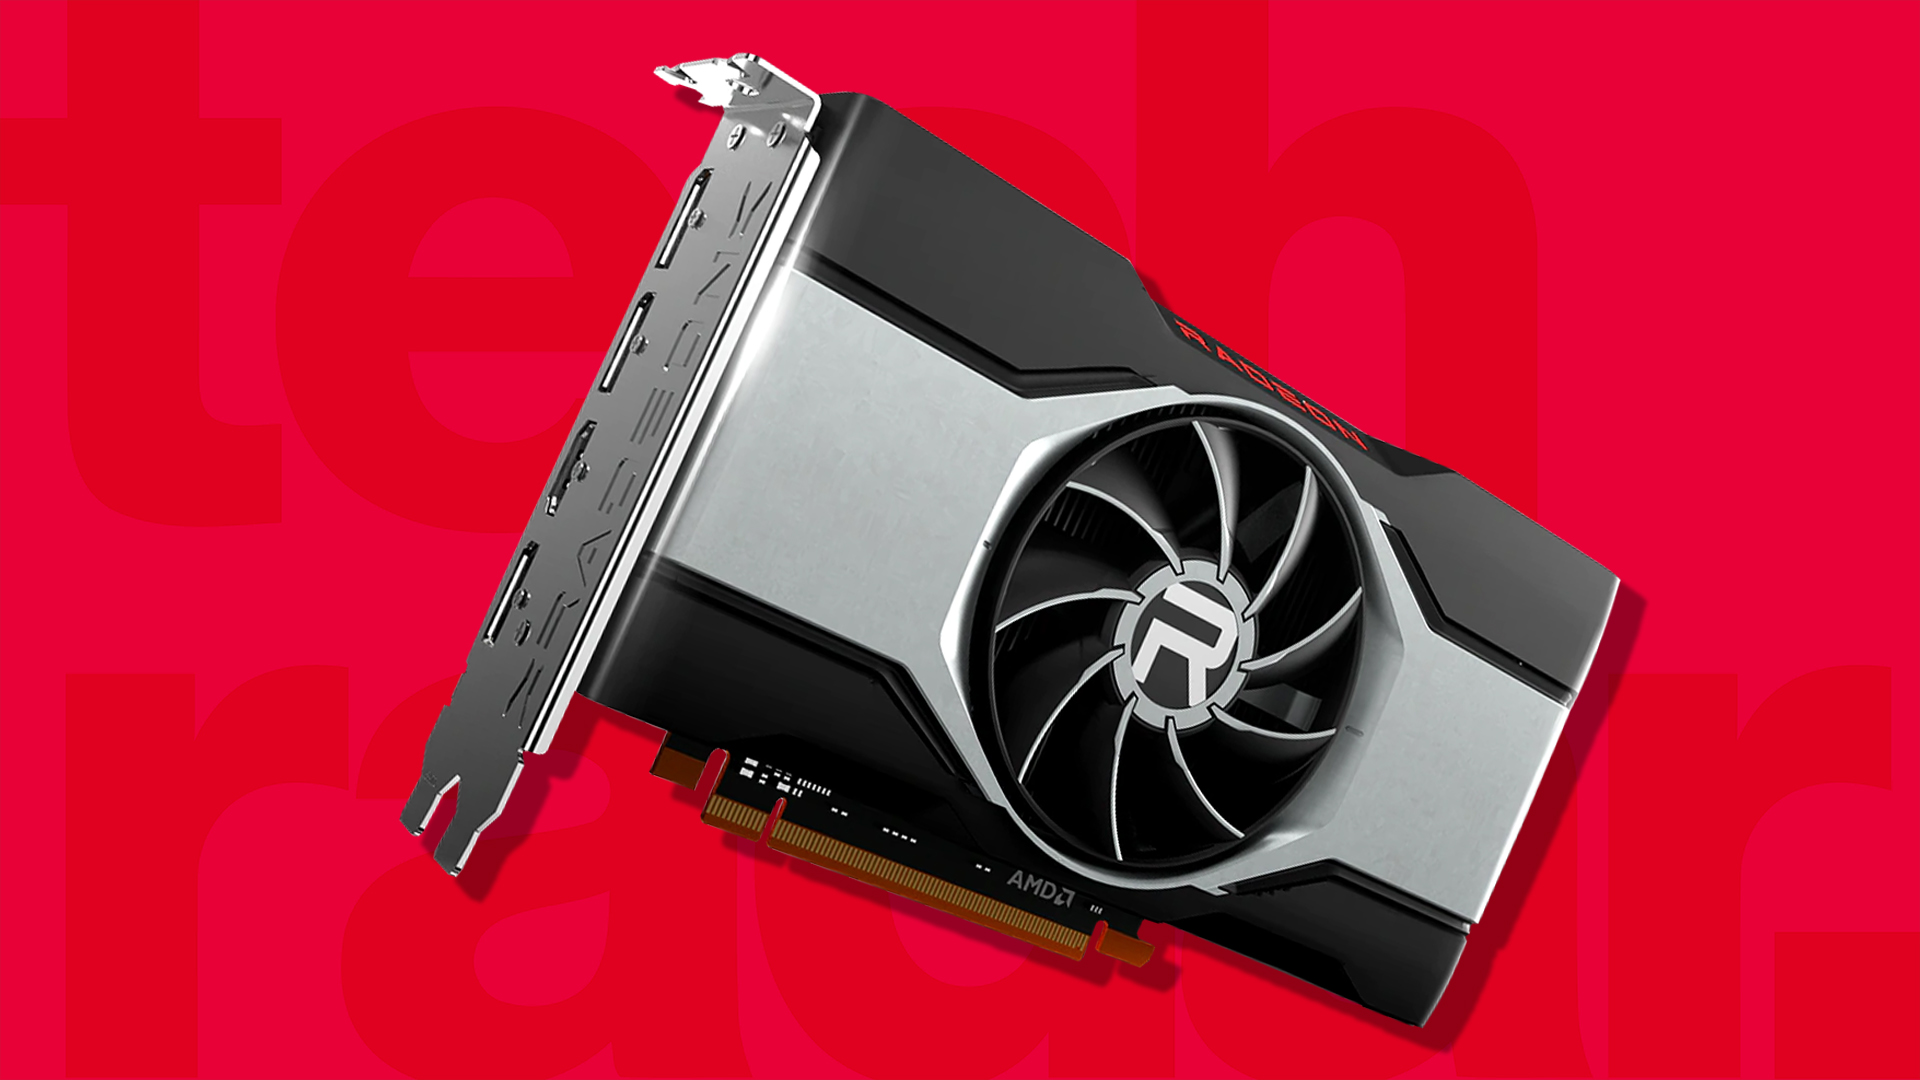 AMD Radeon RX 6600 XT : idéale pour le jeu Full HD